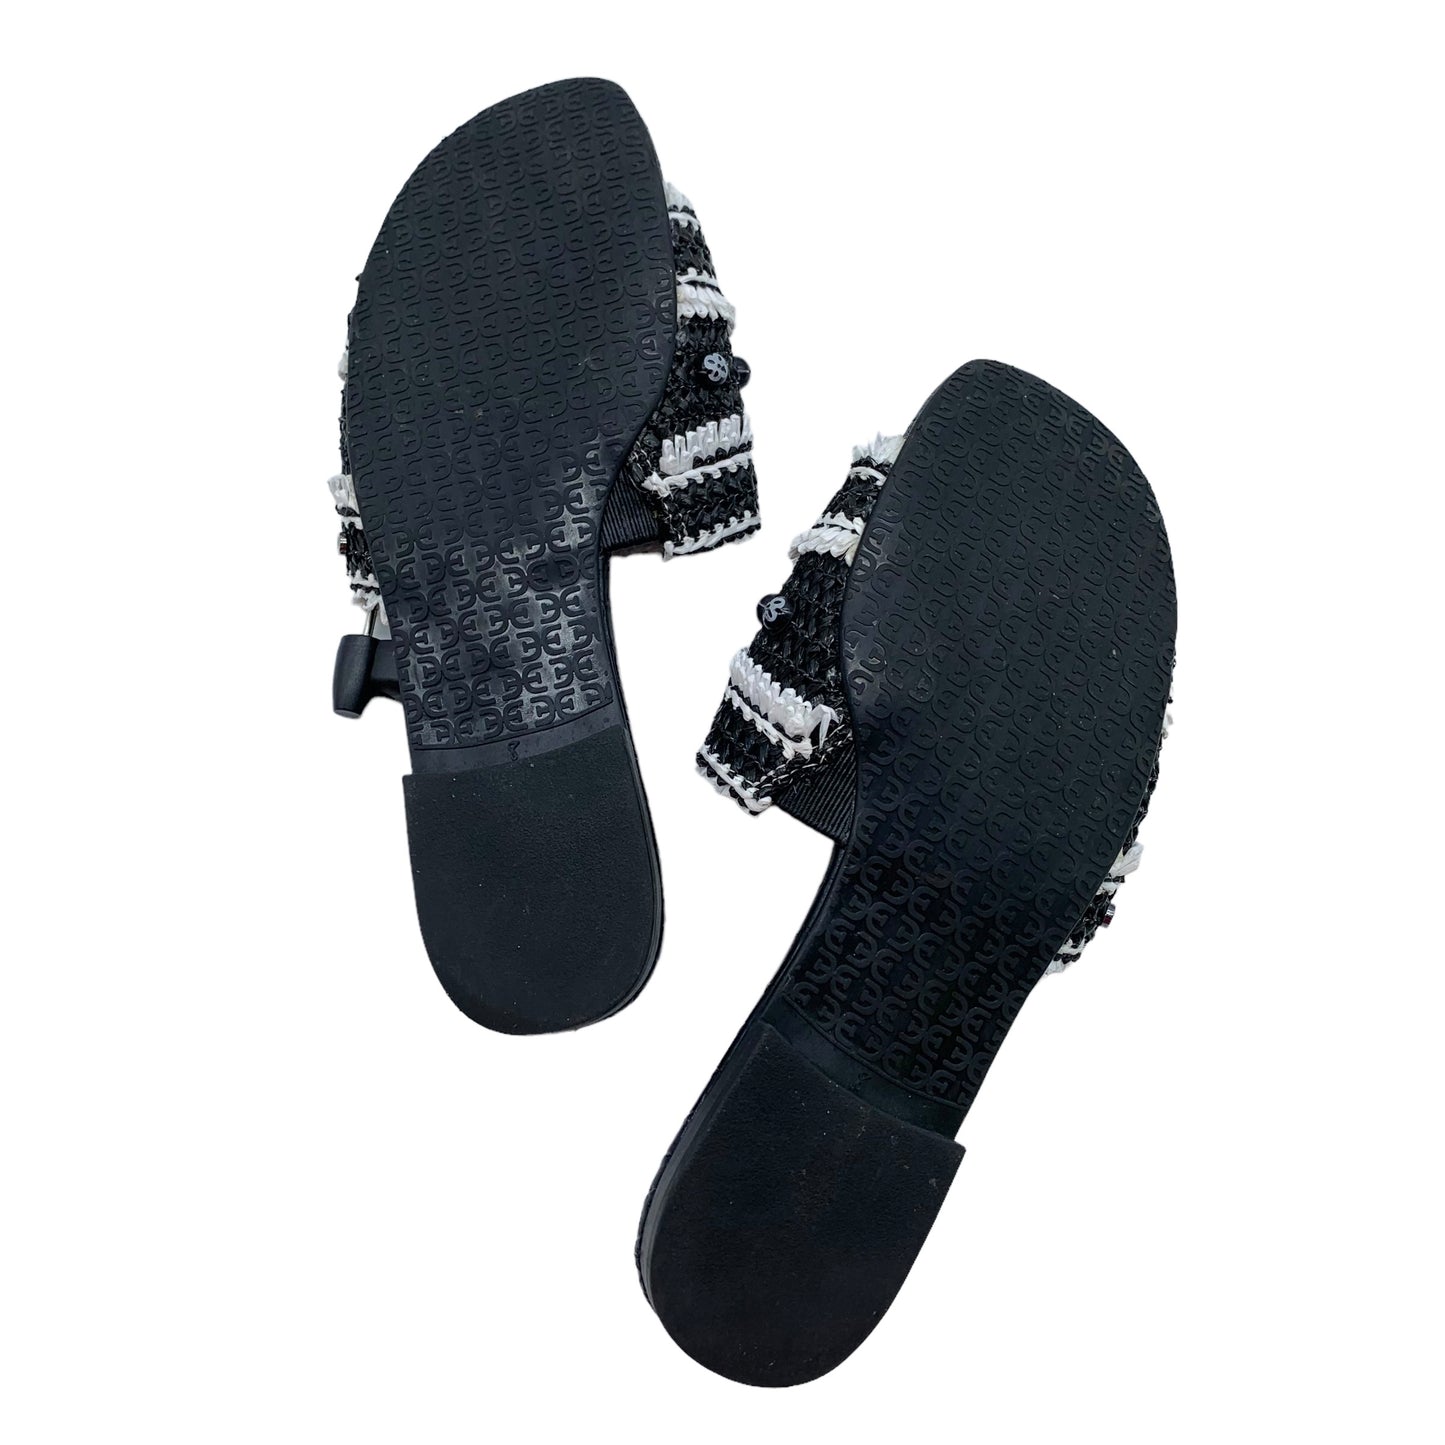 Sandals Flip Flops By Sam Edelman  Size: 8